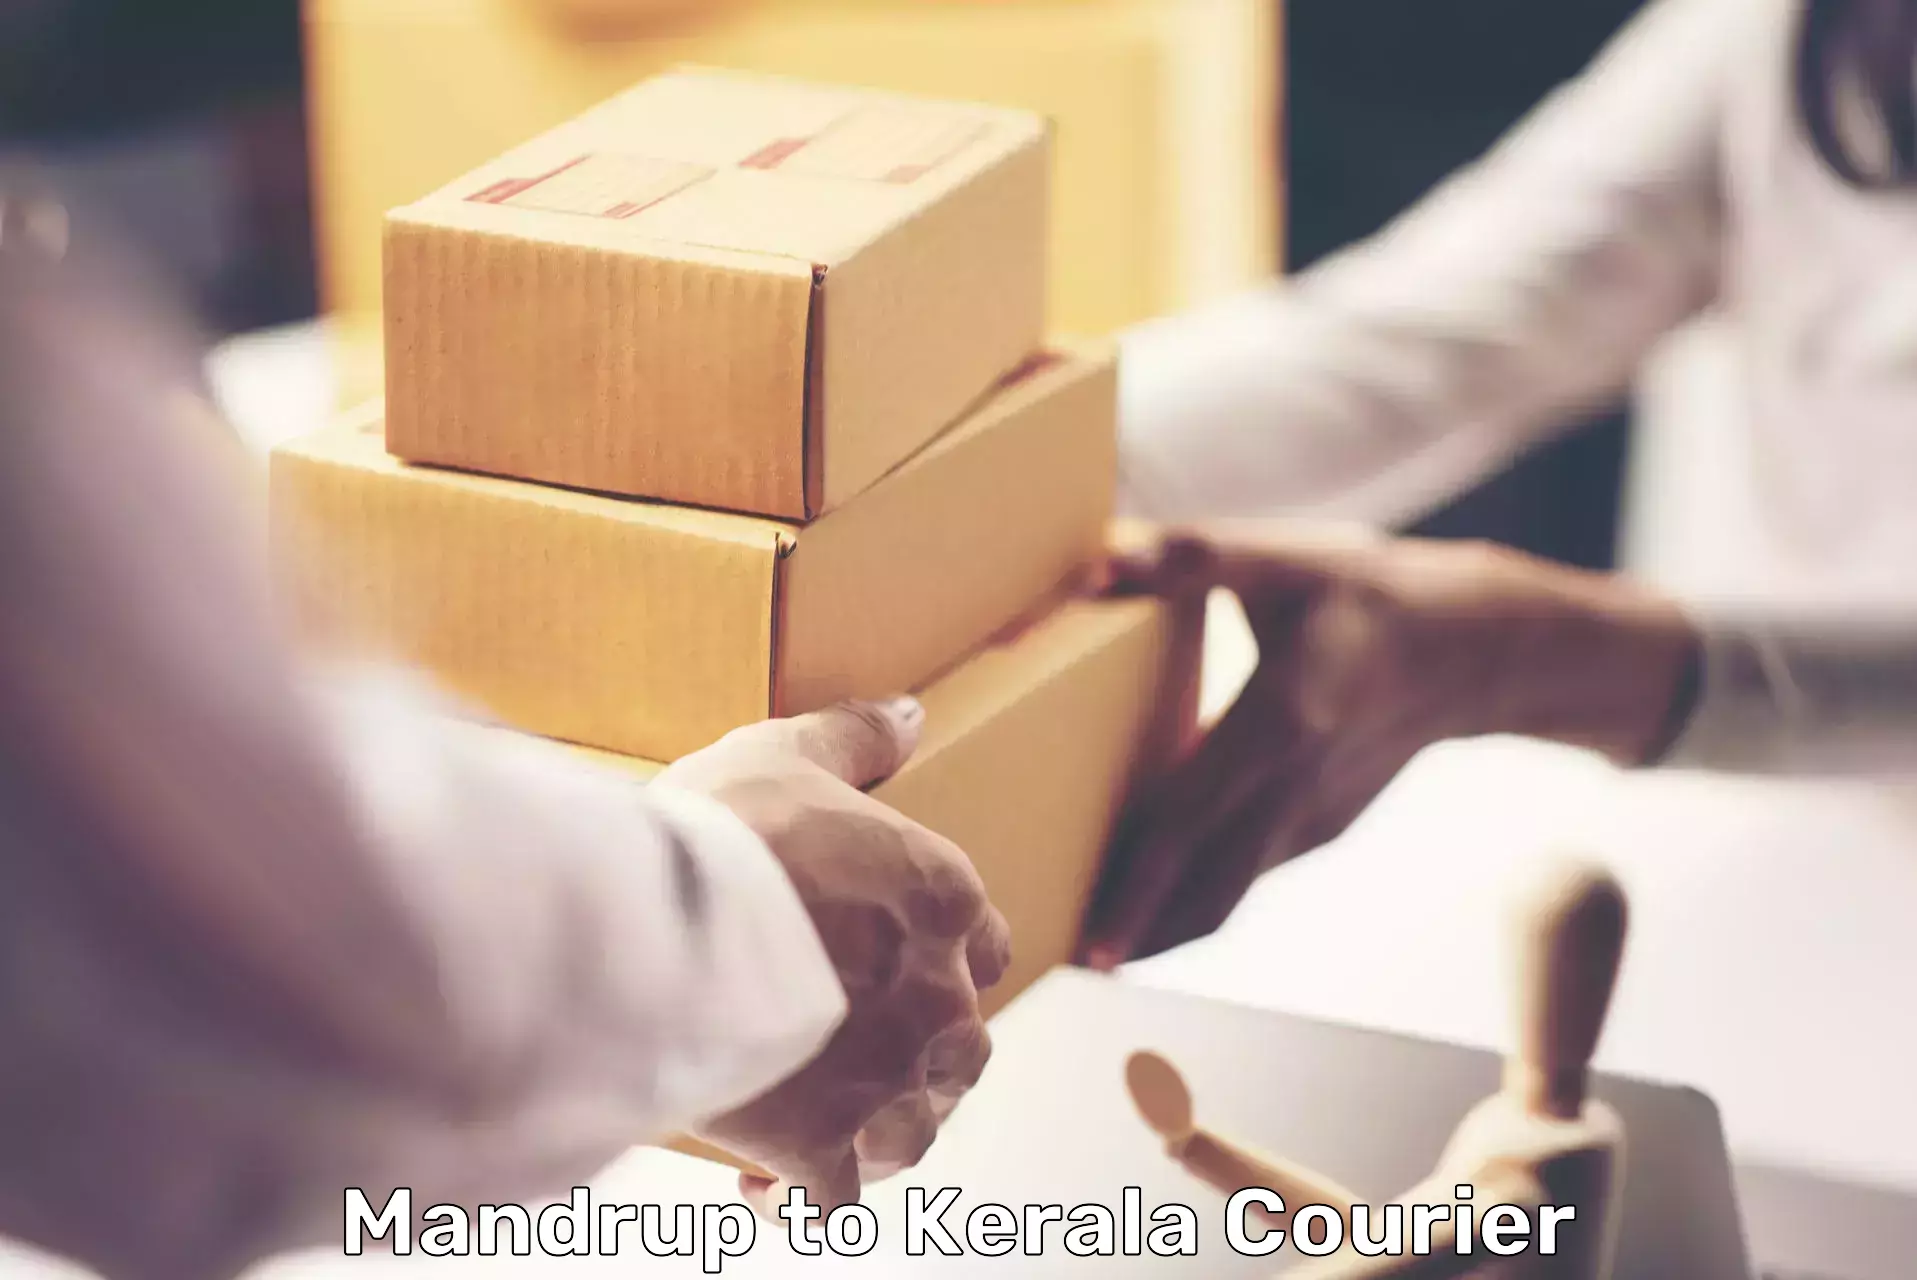 Bulk courier orders Mandrup to Kottayam